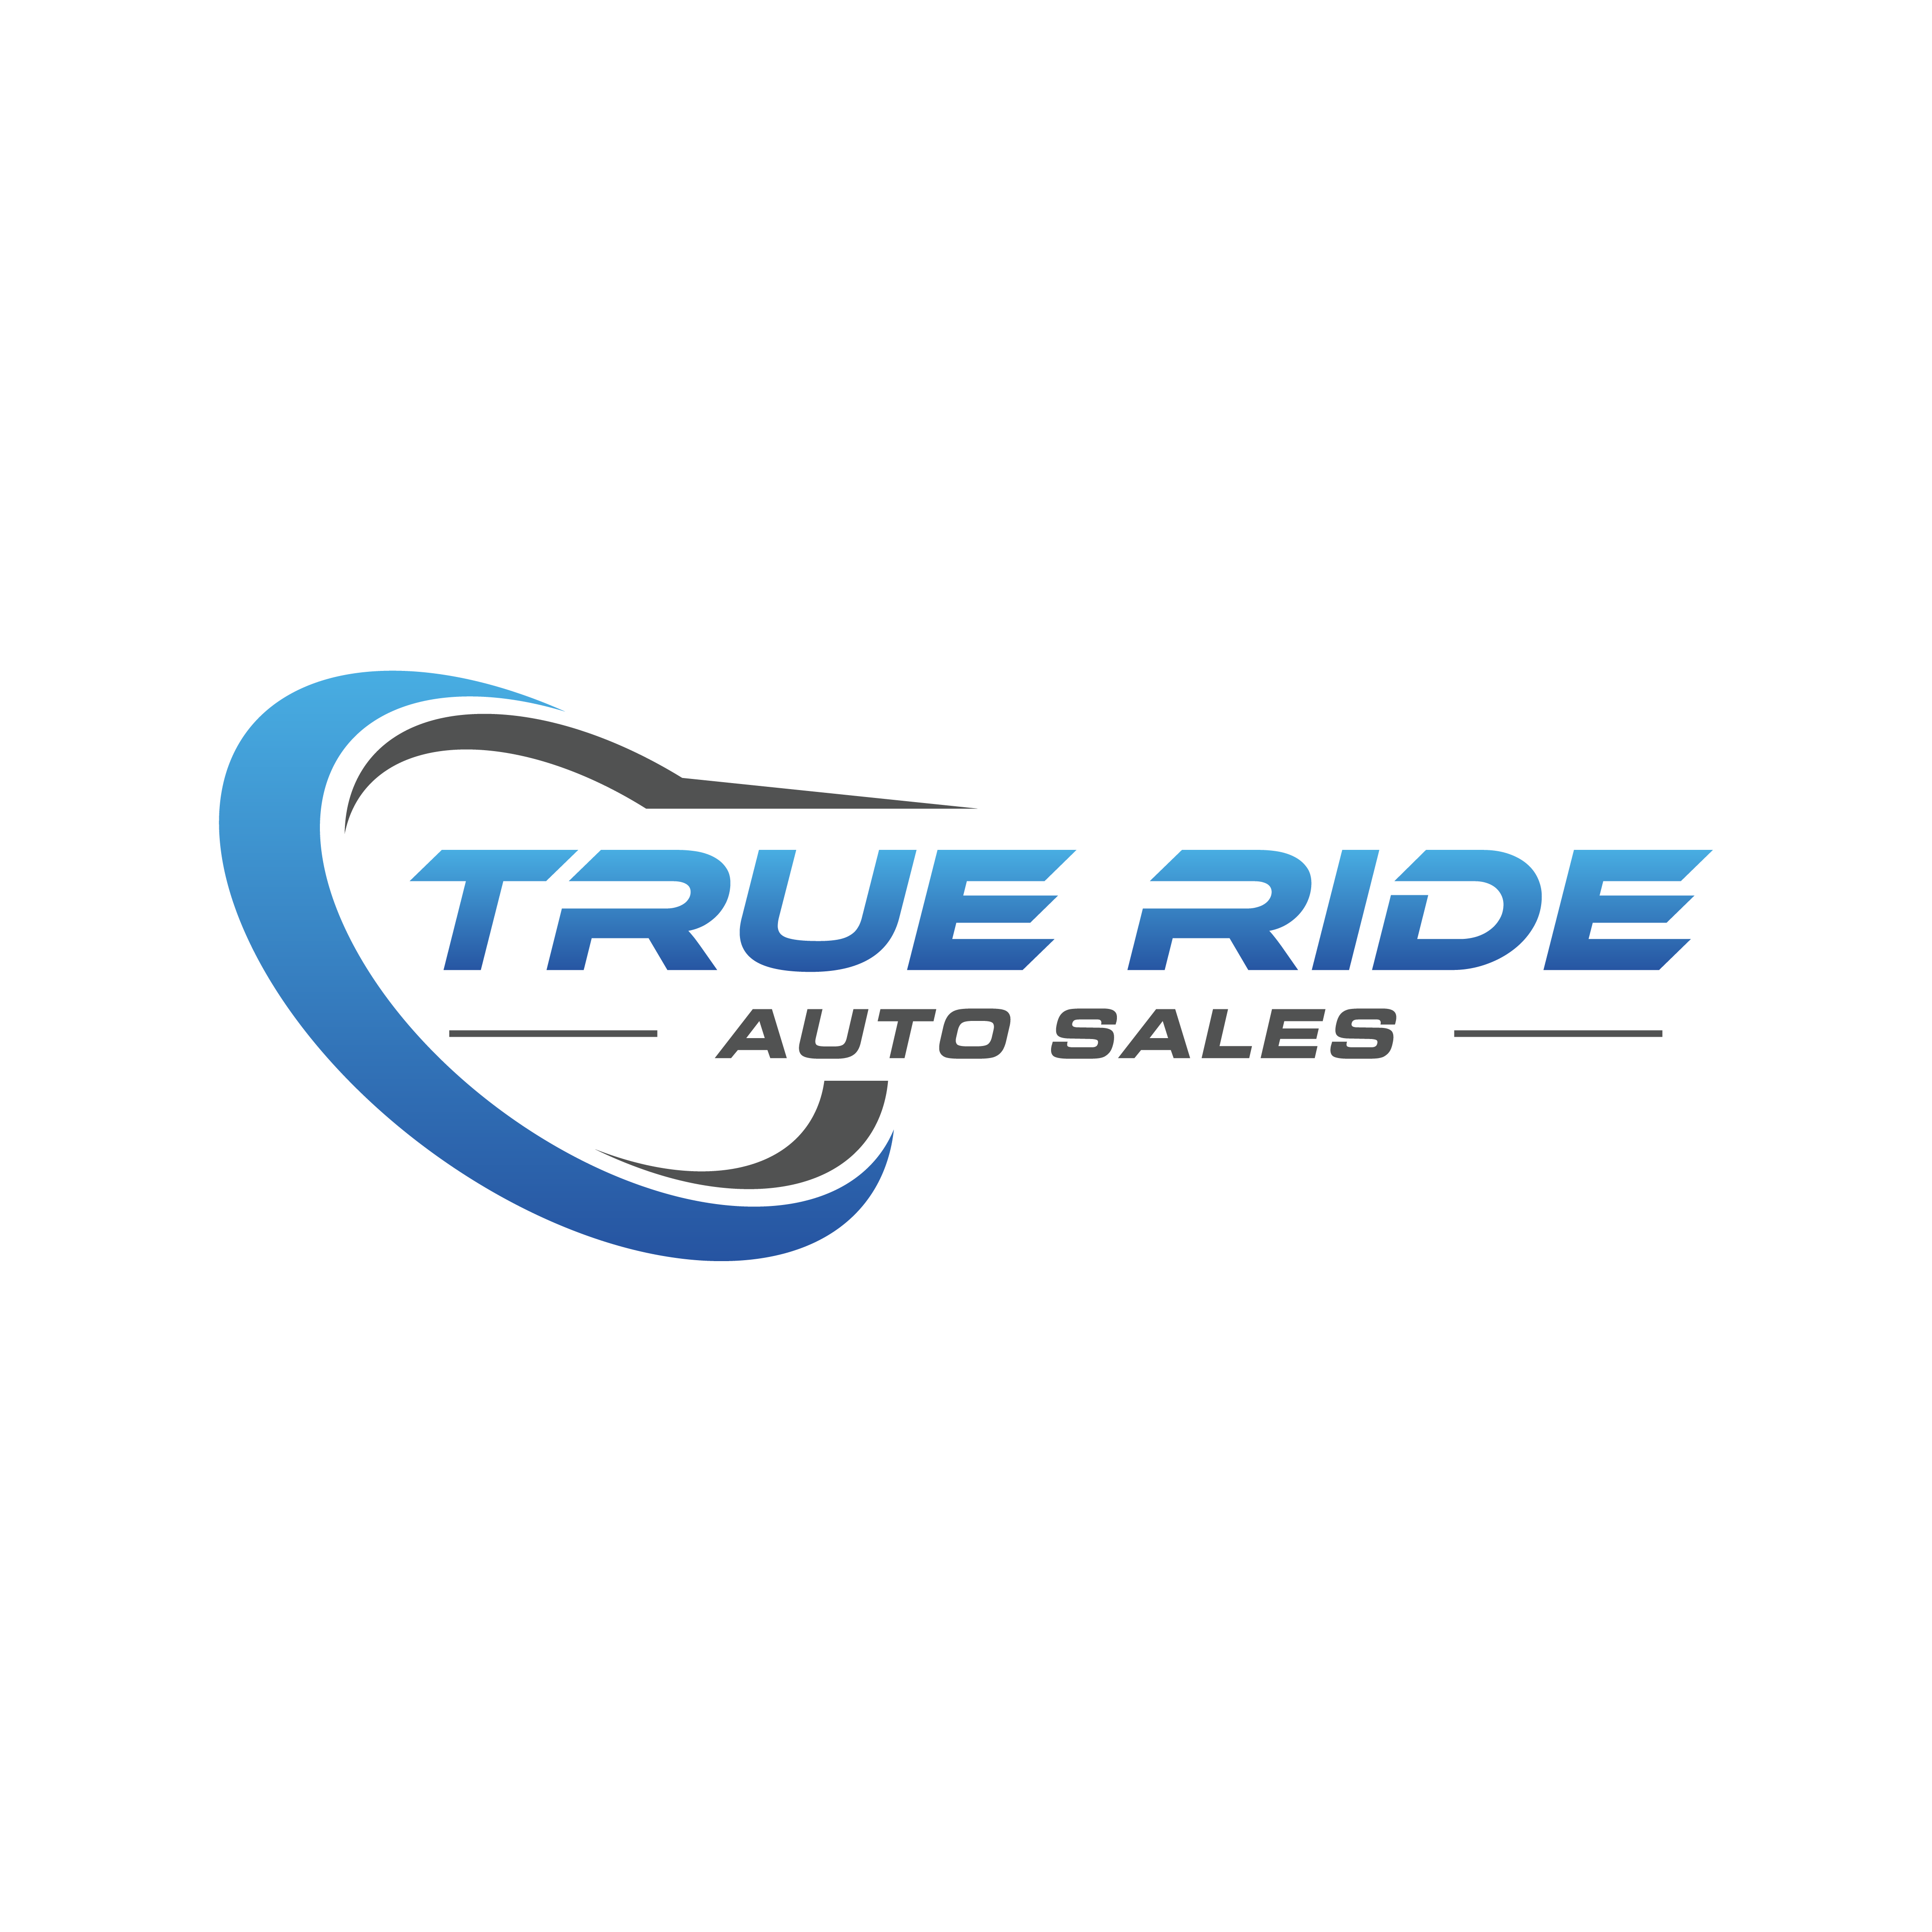 True Ride Auto Sales